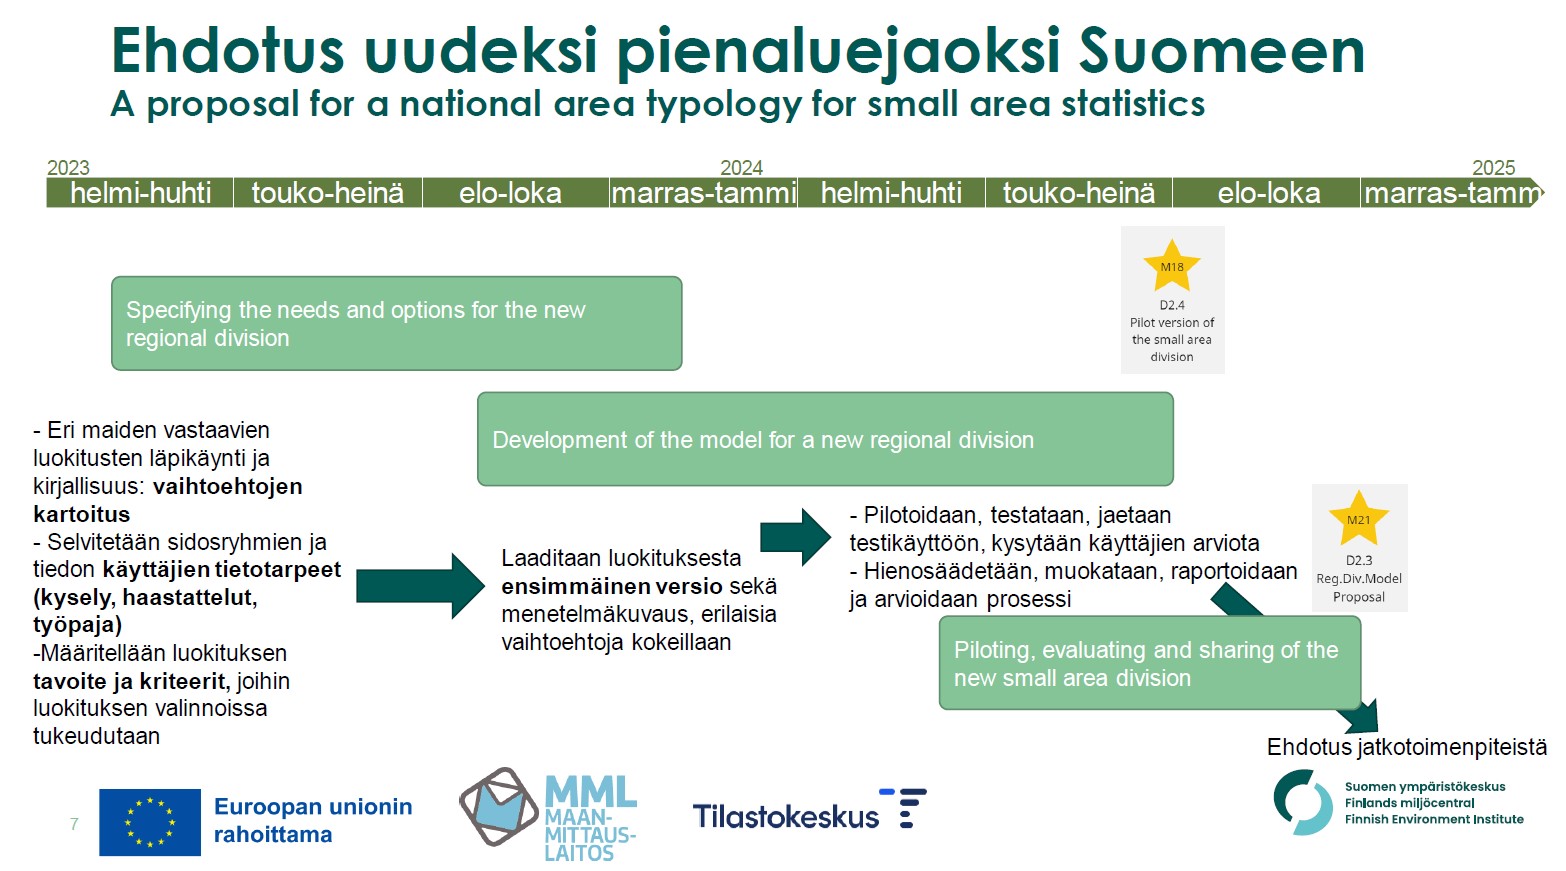 Kuva, jossa on kuvattu ehdotusta Suomen uudeksi pienaluejaoksi.